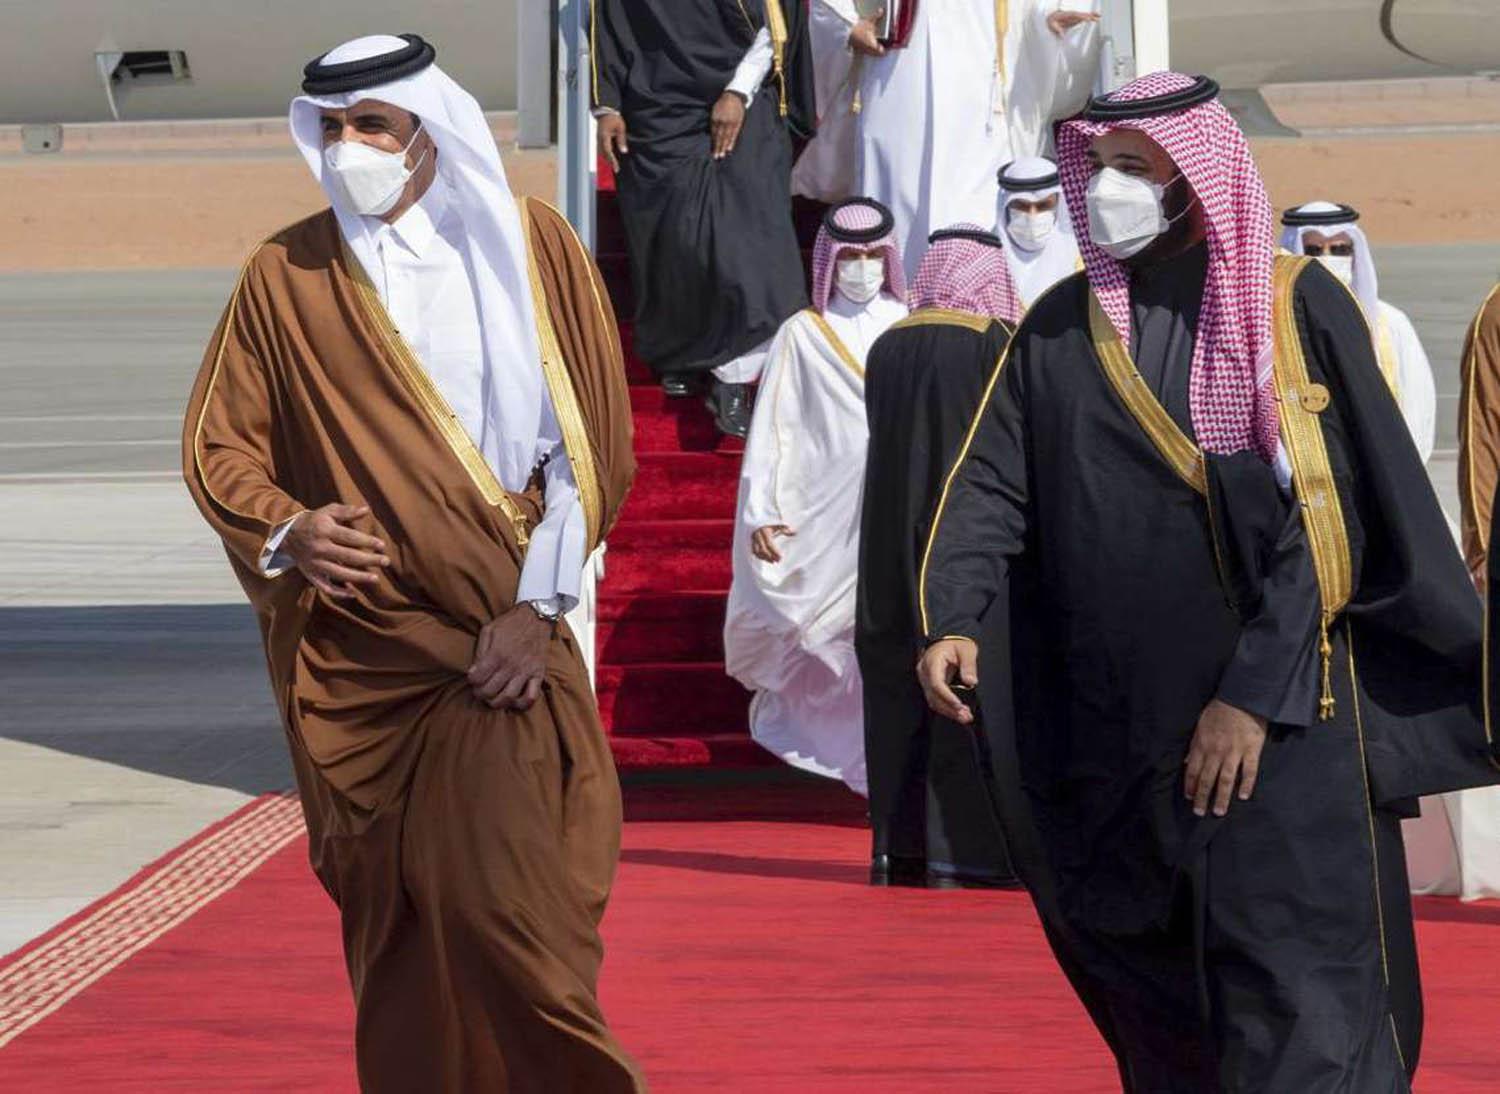 ولي العهد السعودي الأمير محمد بن سلمان يستقبل أمير قطر الشيخ تيمي بن حمد في العلا بالسعودية